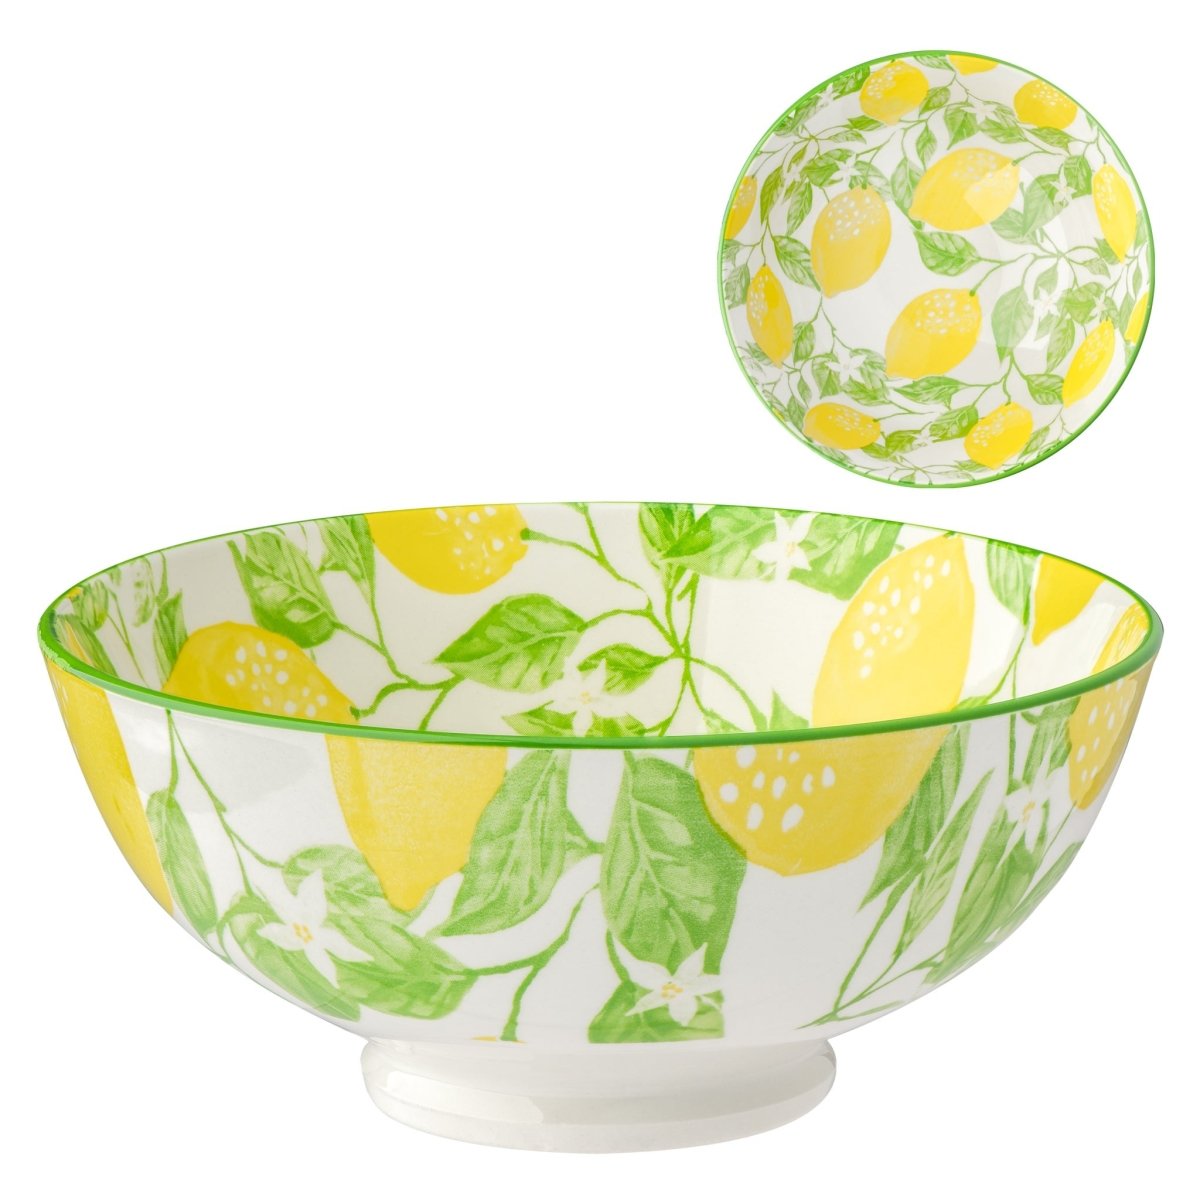 Lemons kiri Porcelain 8 inch Diameter Bowl - Rustic Furniture Outlet